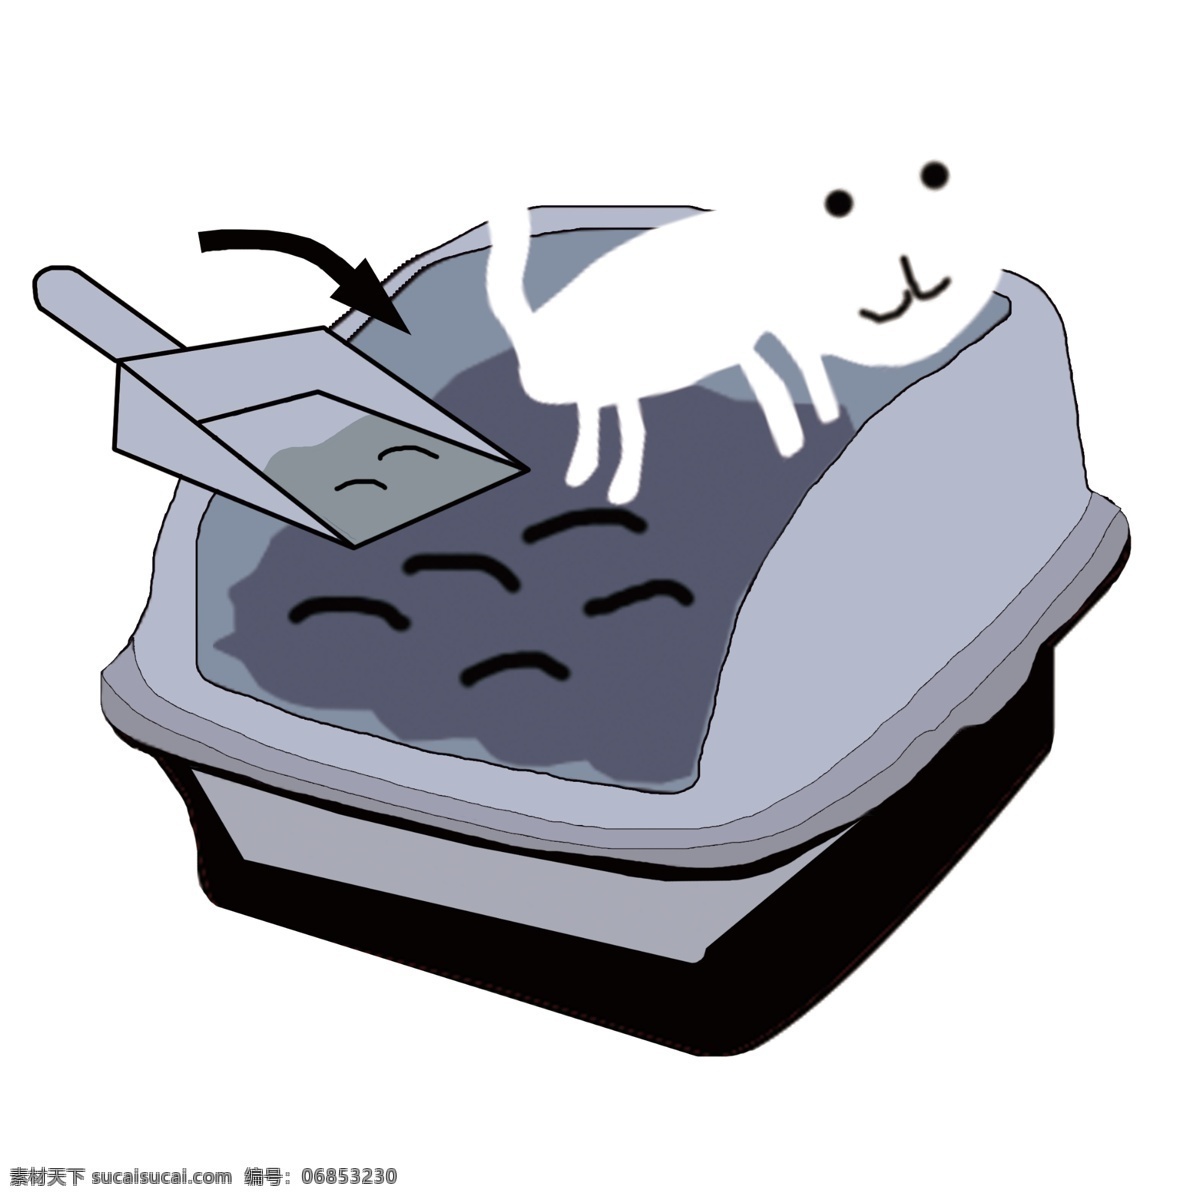 猫盆 猫砂盆 猫砂 盆 猫 蓝色 黑色 白色 说明书 示例图 示范图 包装 分层